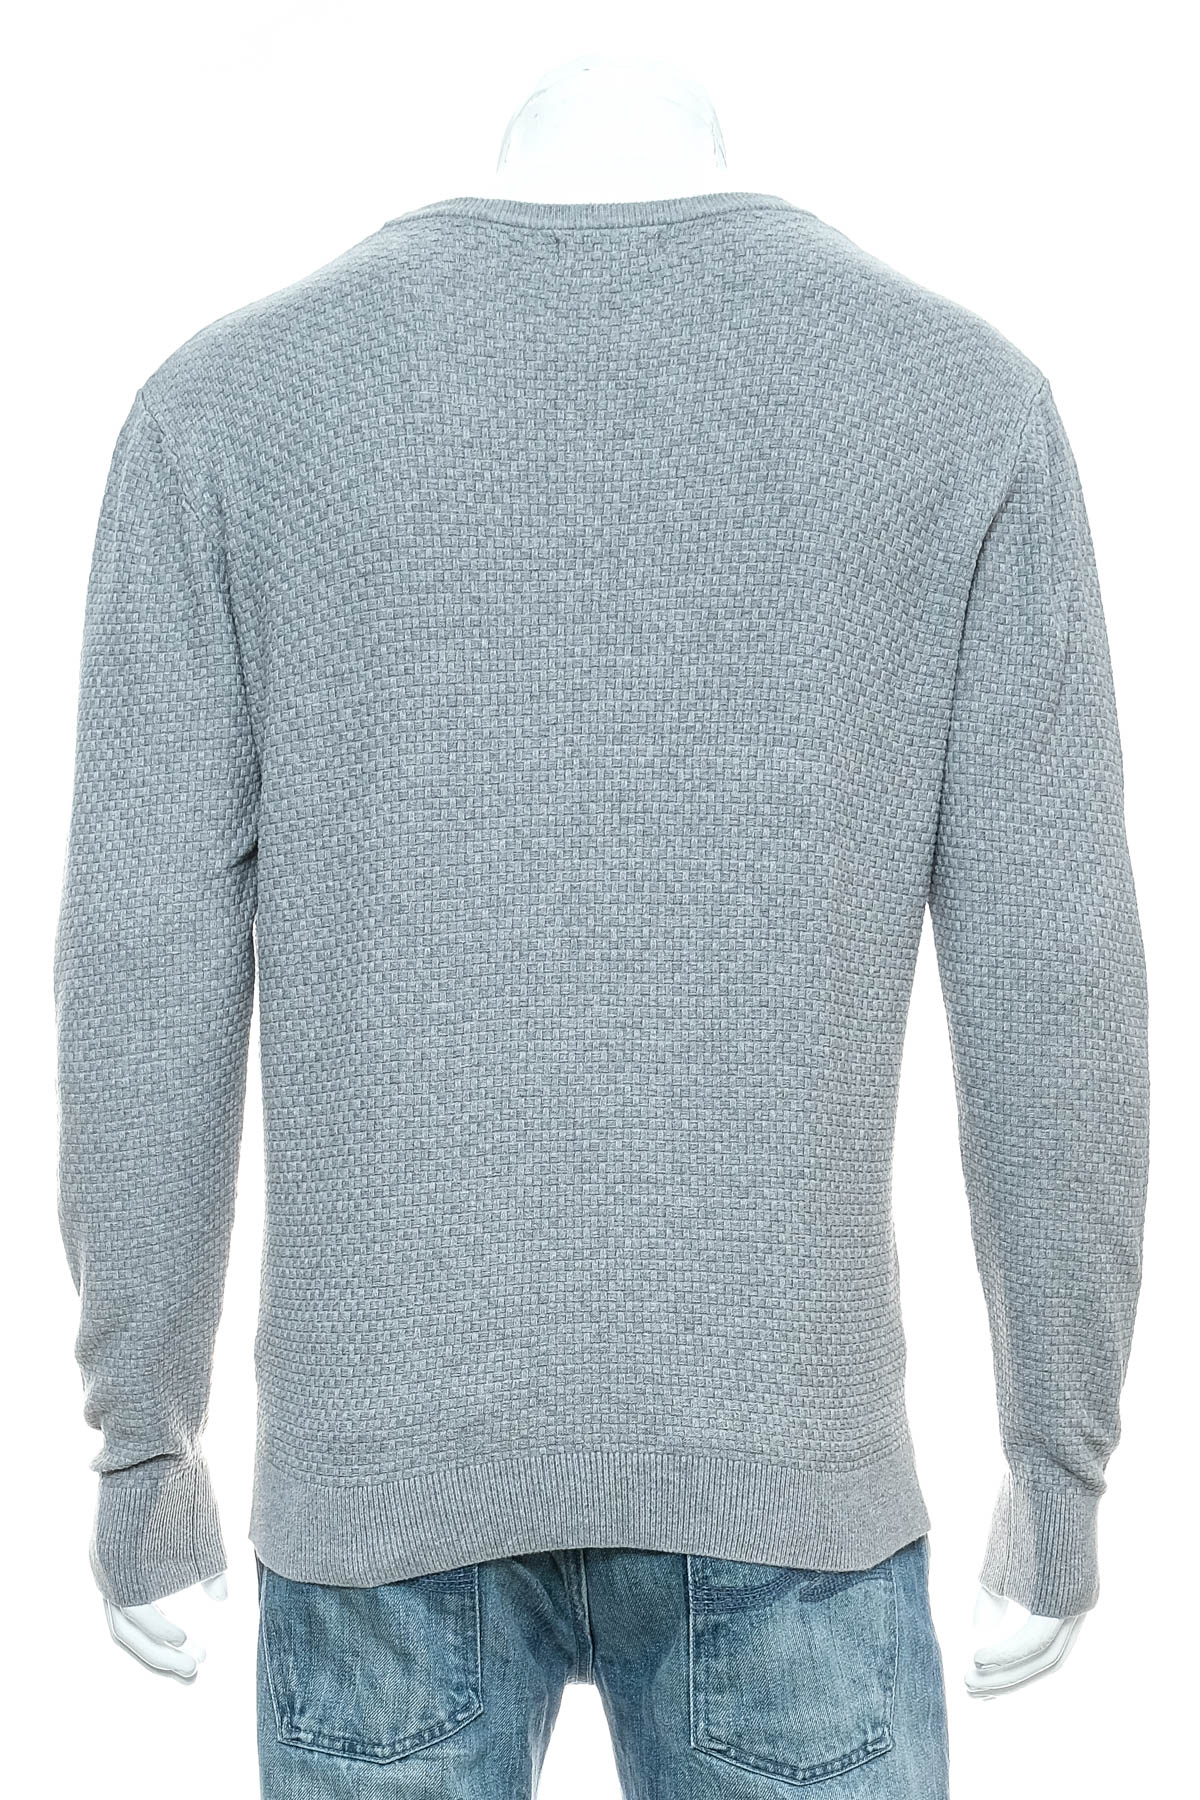 Men's sweater - Bruun & Stengade - 1